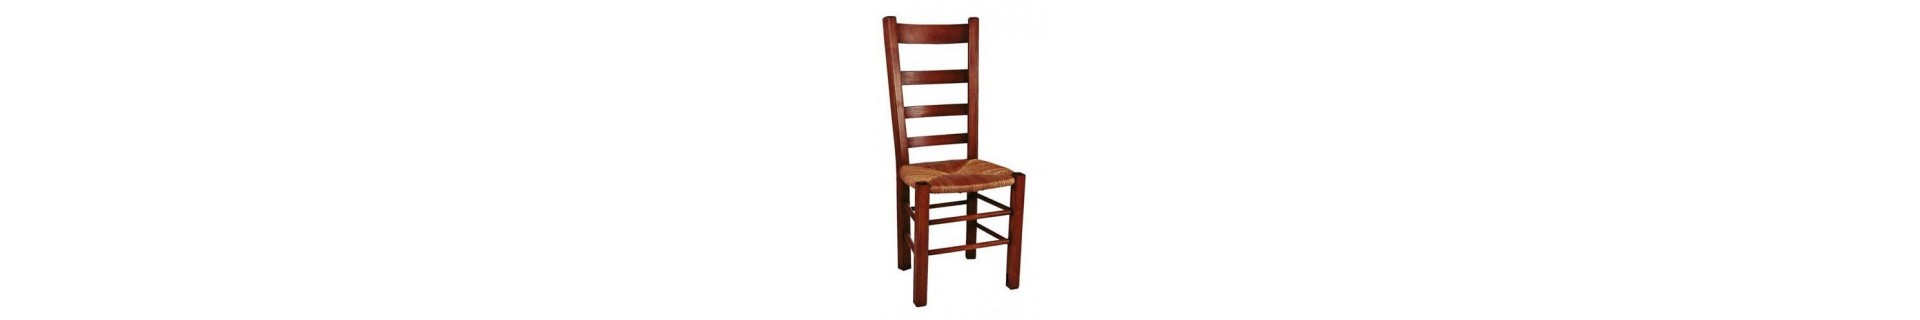 chaise paille : housses de chaise